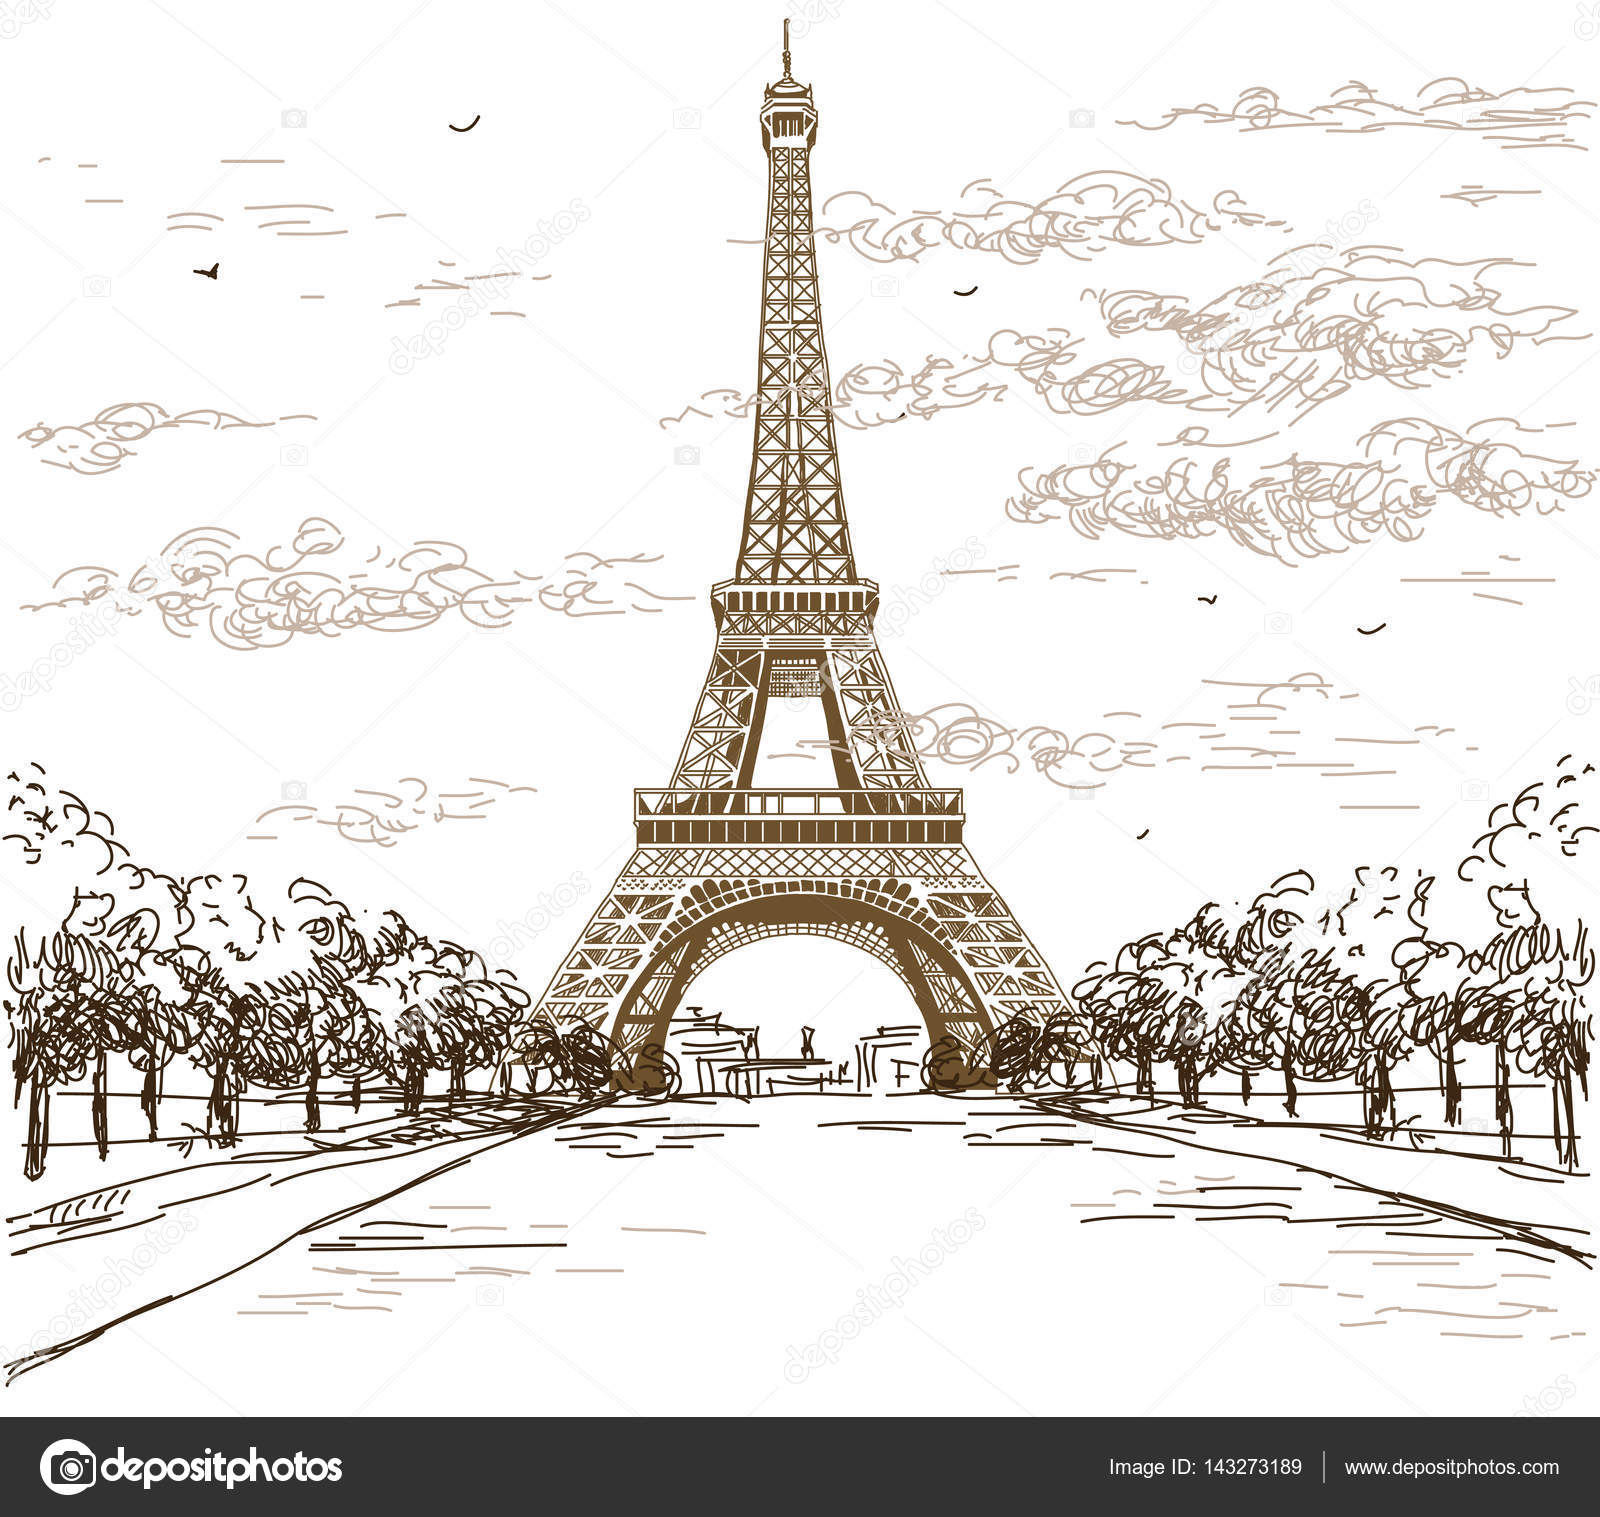 Paesaggio con la Torre Eiffel nei colori bianco e nero su fondo grigio illustrazione disegno a mano — Vettoriali di Alinart